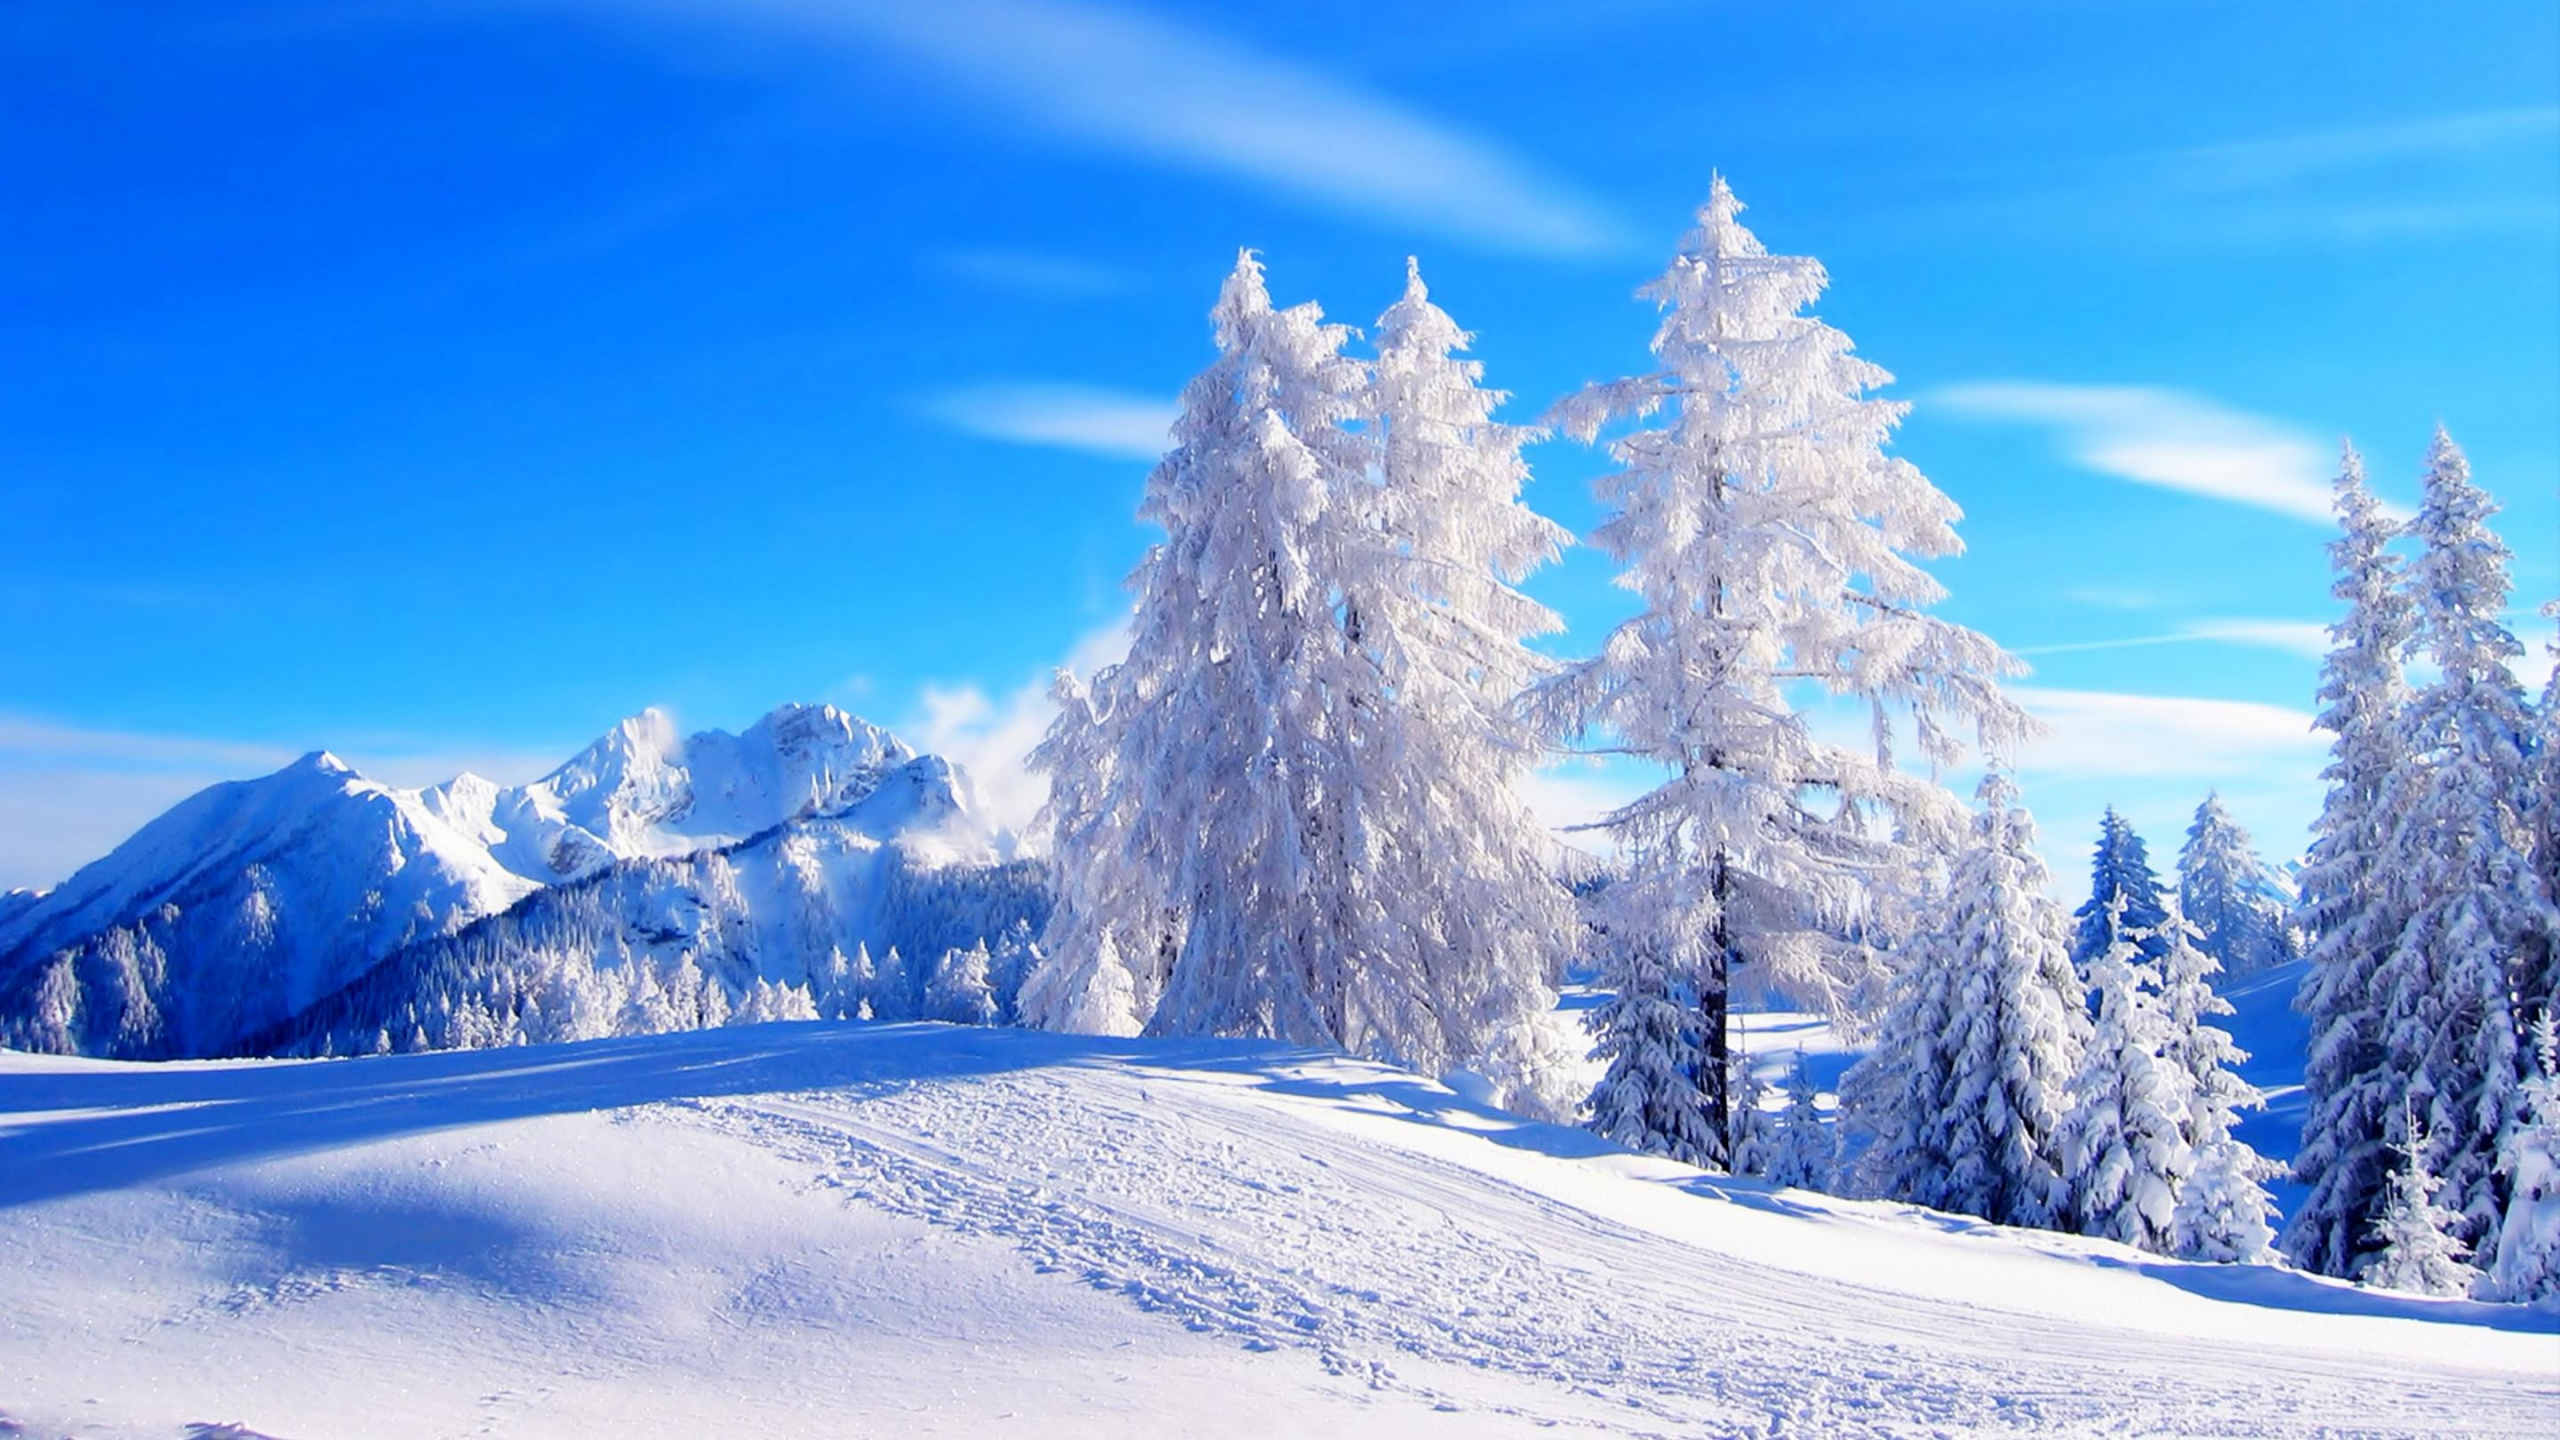 冬天, 冻结, Fir, 安装的风景, 多山的地貌 壁纸 2560x1440 允许